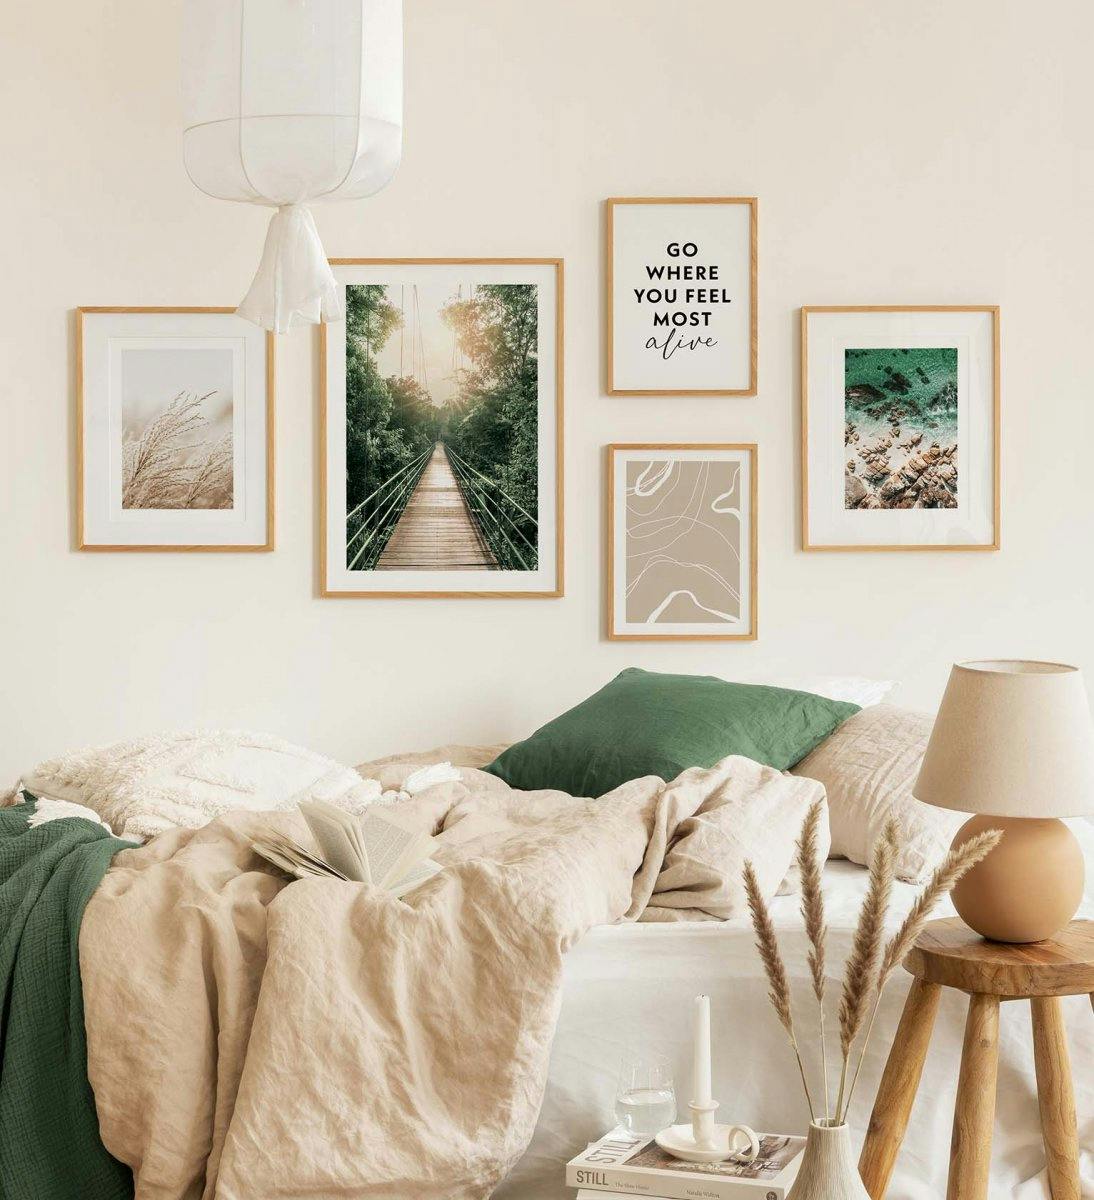 معرض جداري للون الأخضر يحتوي على صور من الطبيعة جنبًا إلى جنب مع اقتباسات ورسوم خطية تناسب غرفة النوم